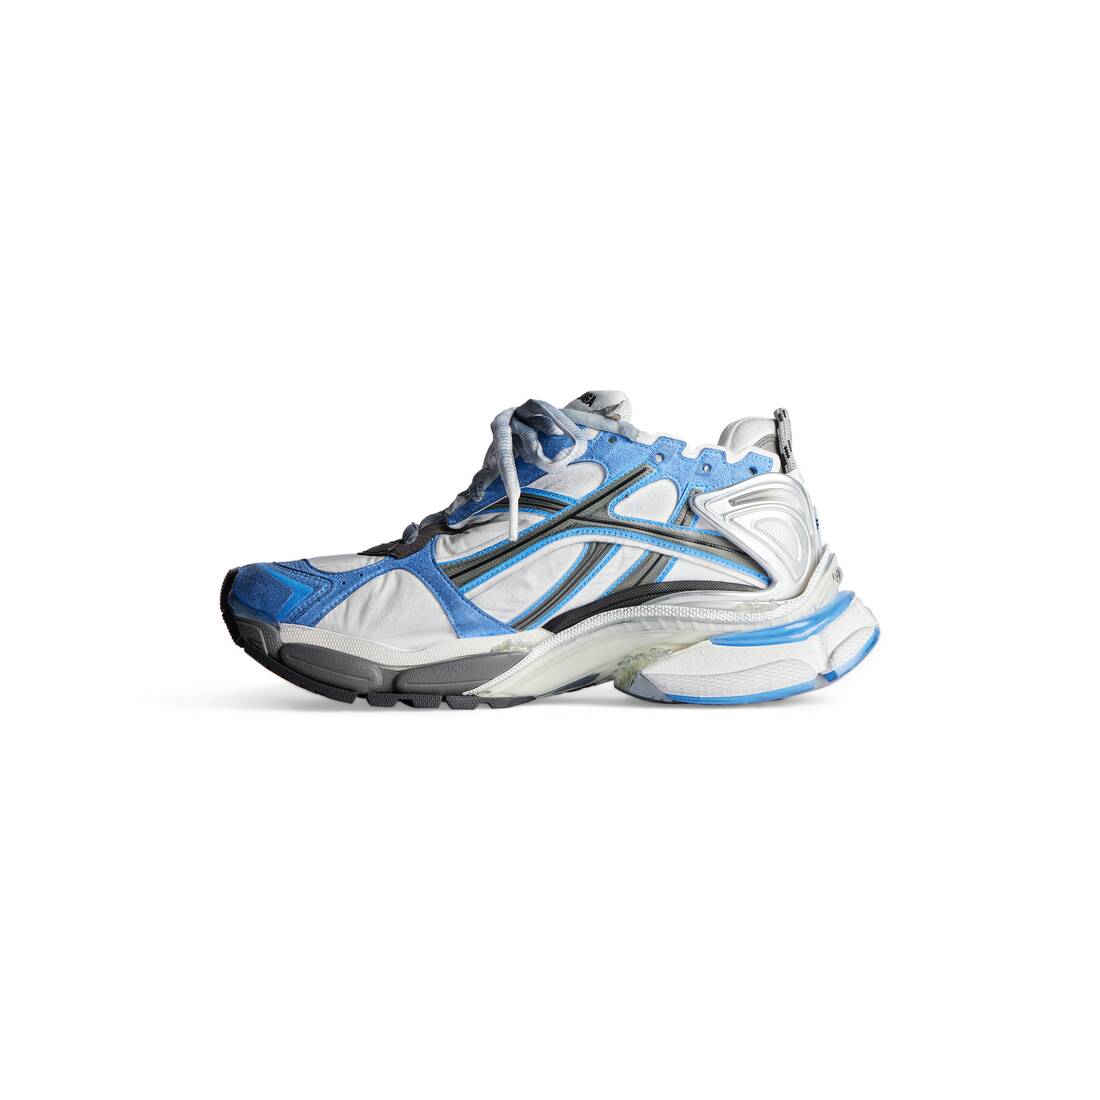 Men's Runner Sneaker in Blue/white/grey